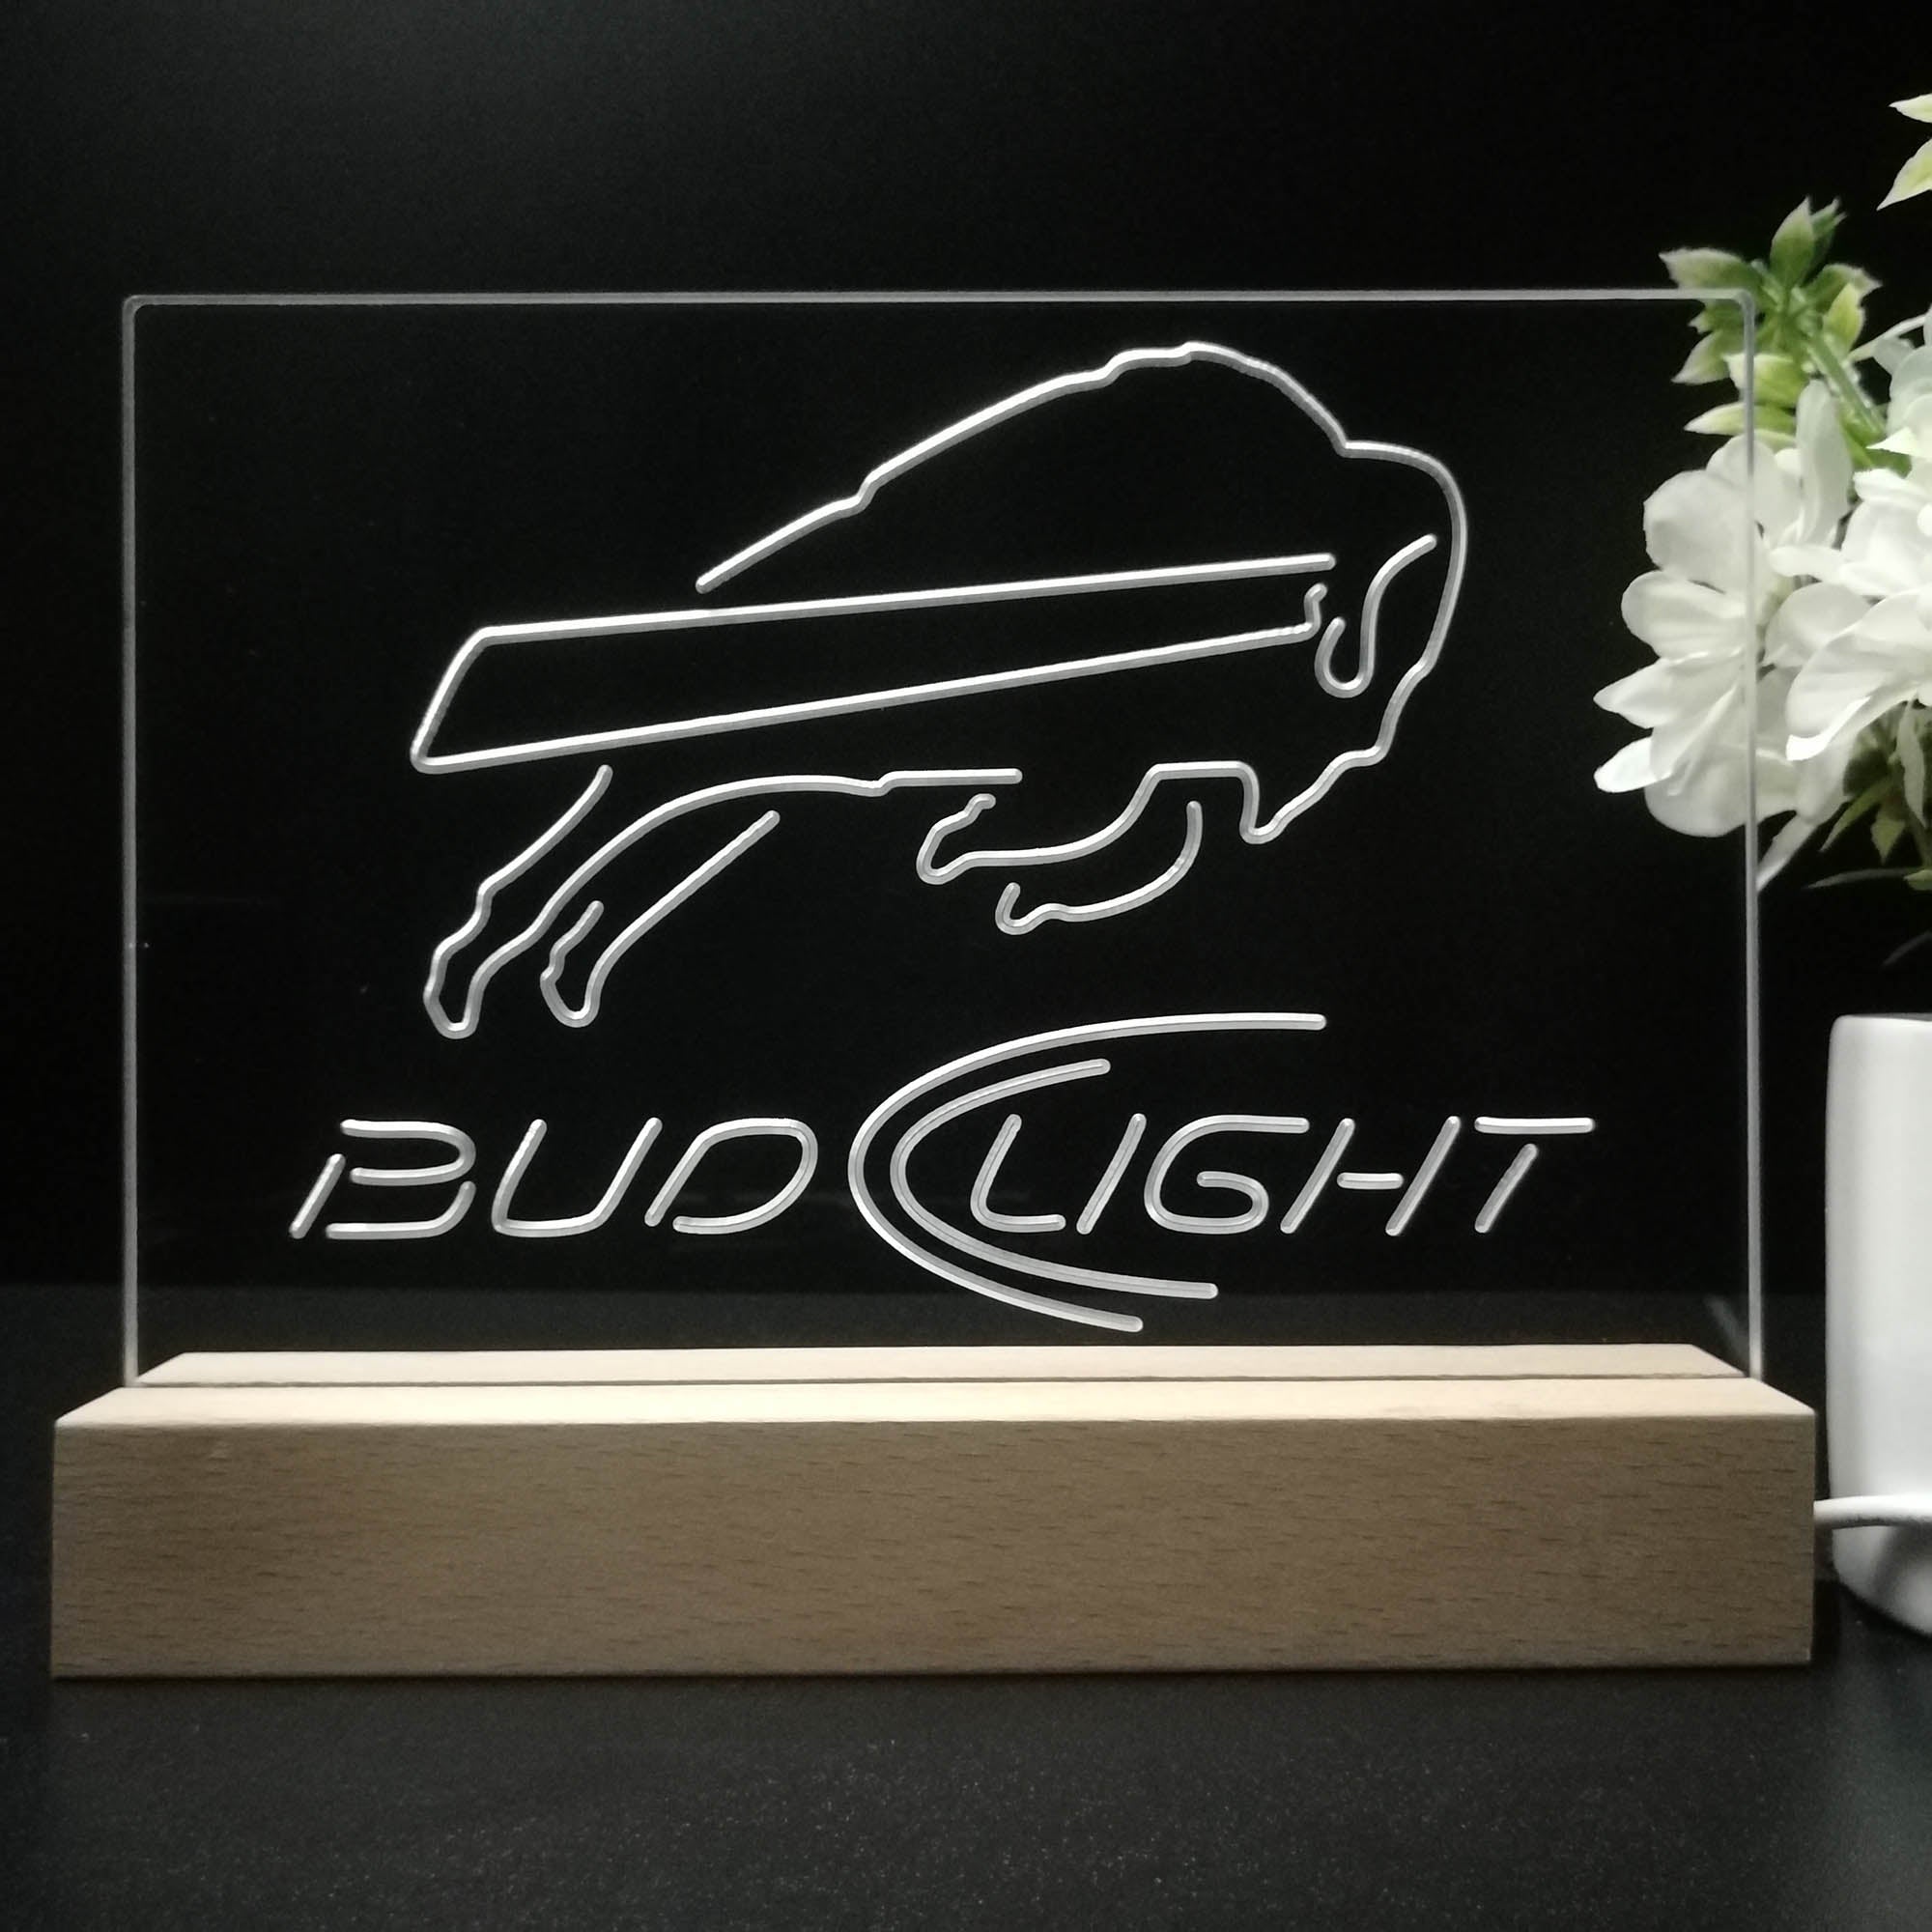 Buffalo Bills Bud Light Sport Team Night Light 3D Illusion Lamp